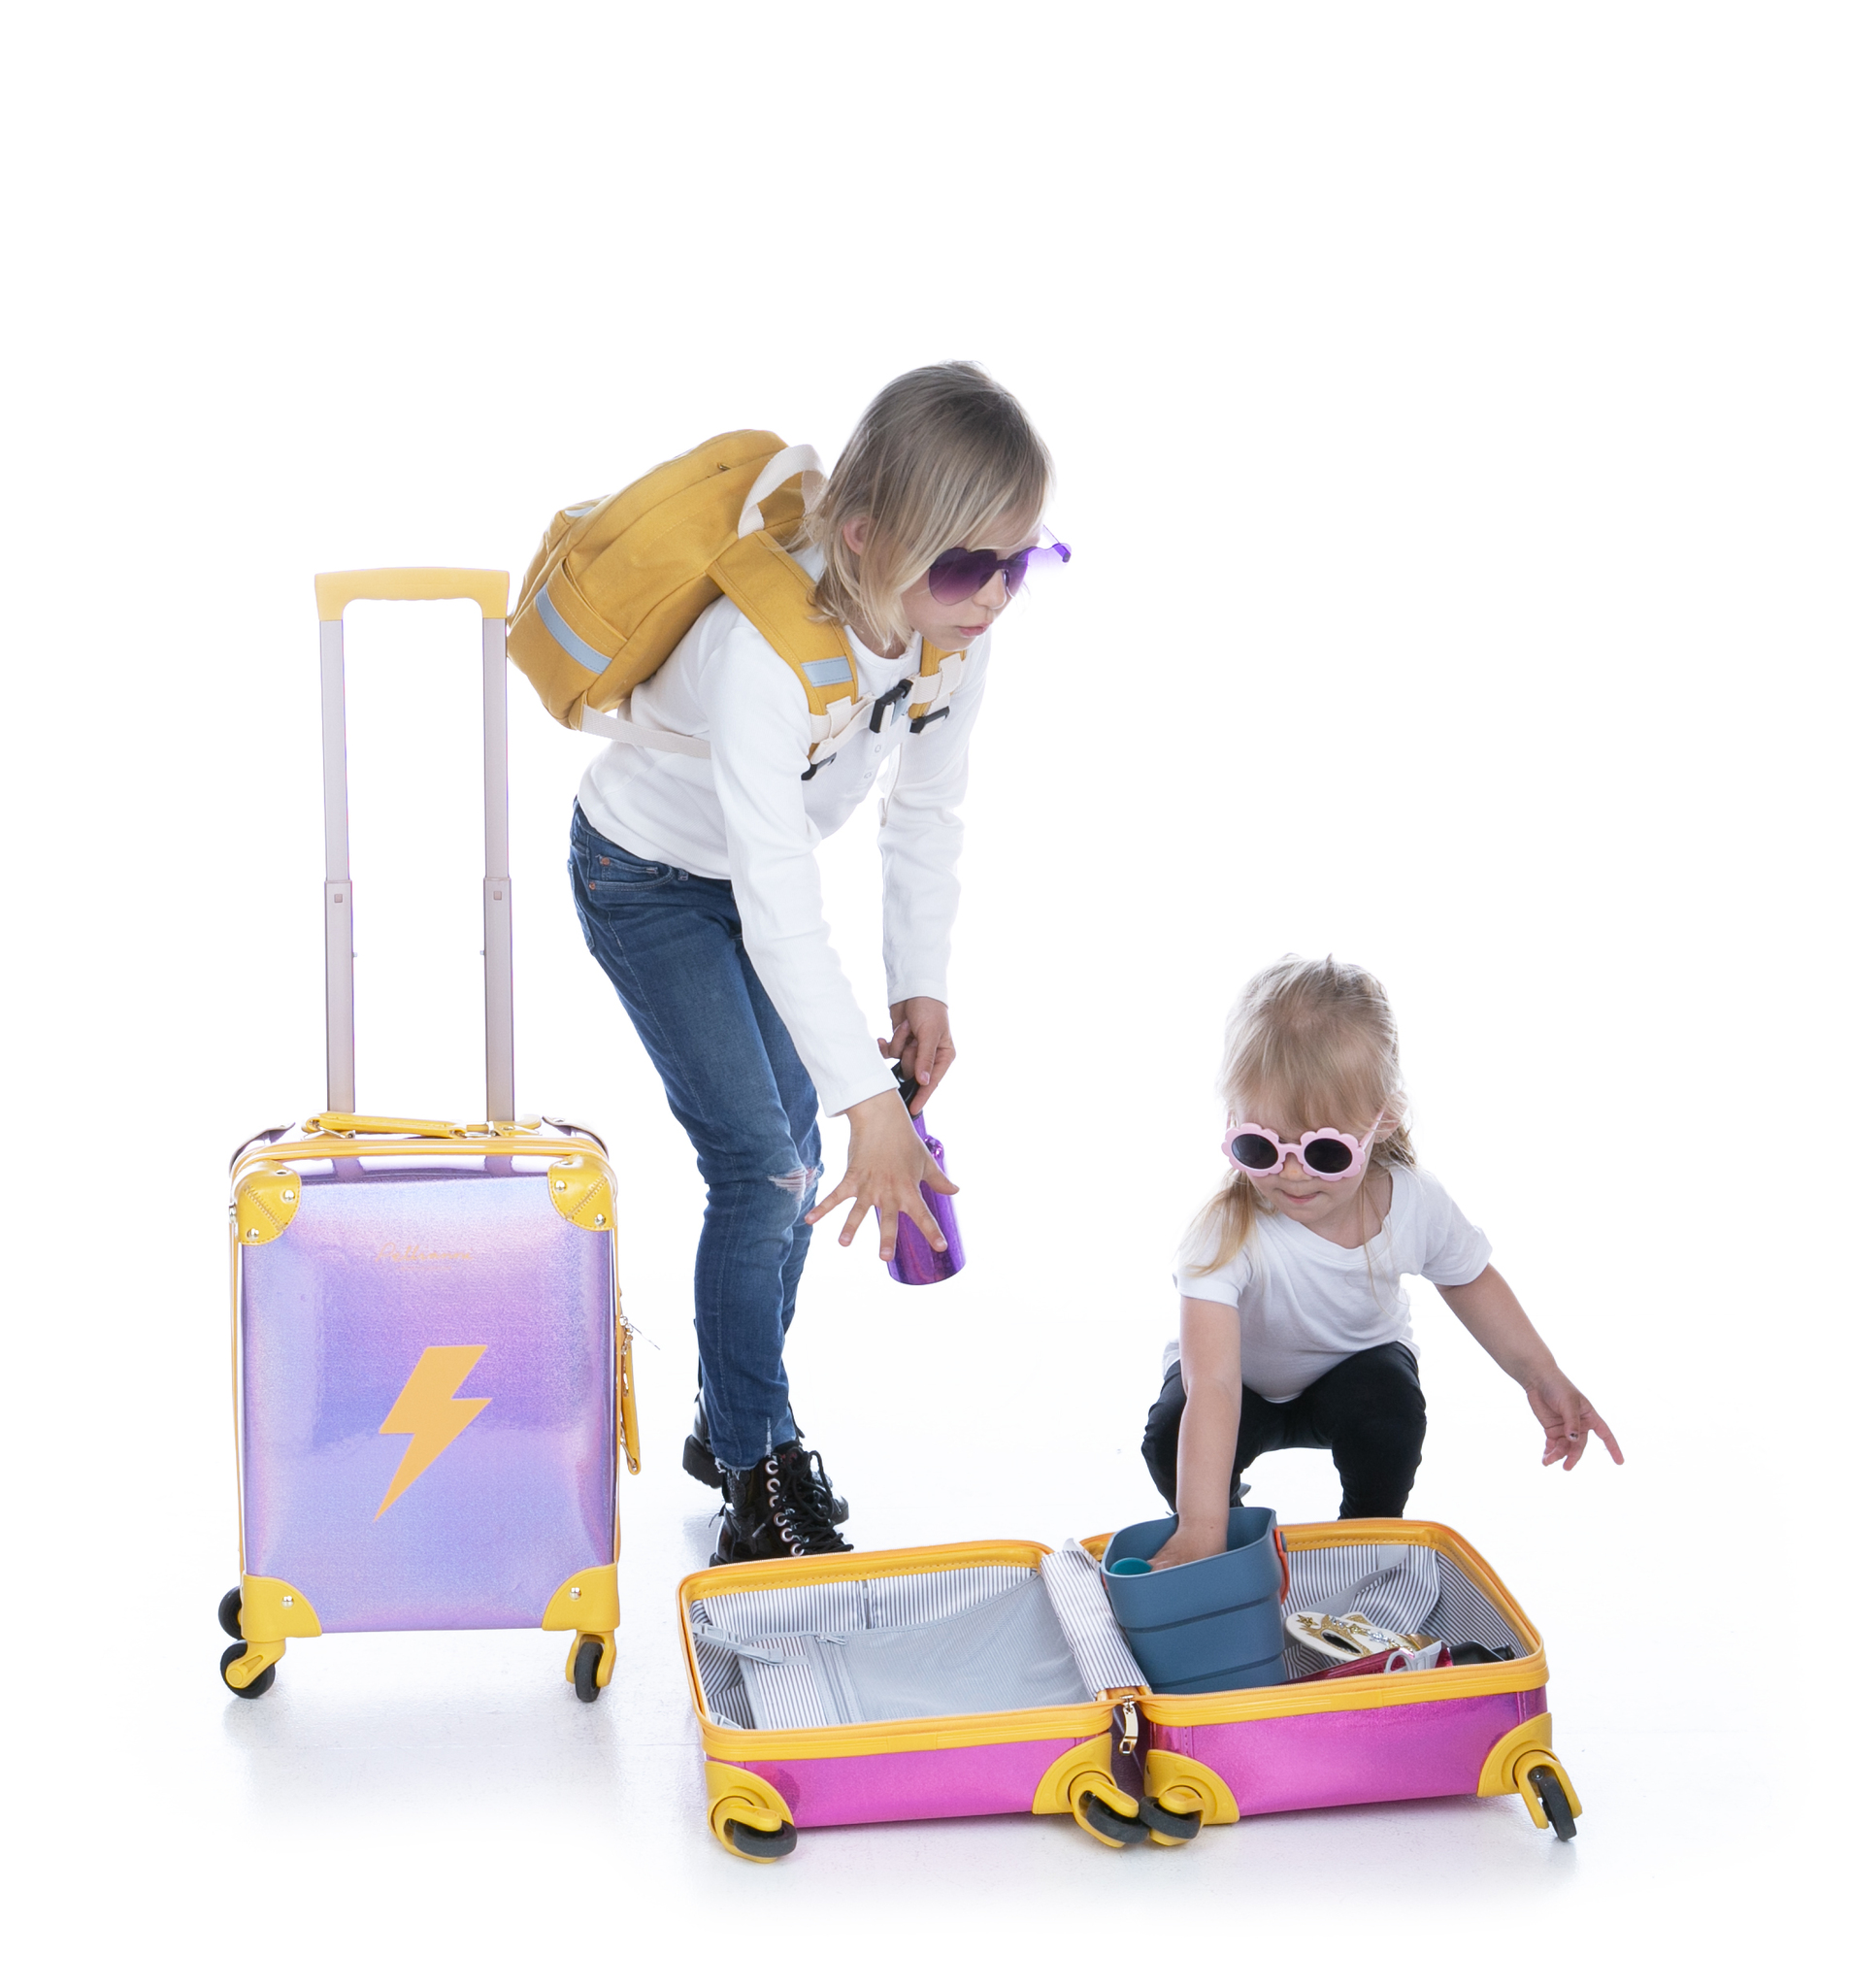 Kopia Suitcase Purple Lightning/ resväska med hjul.